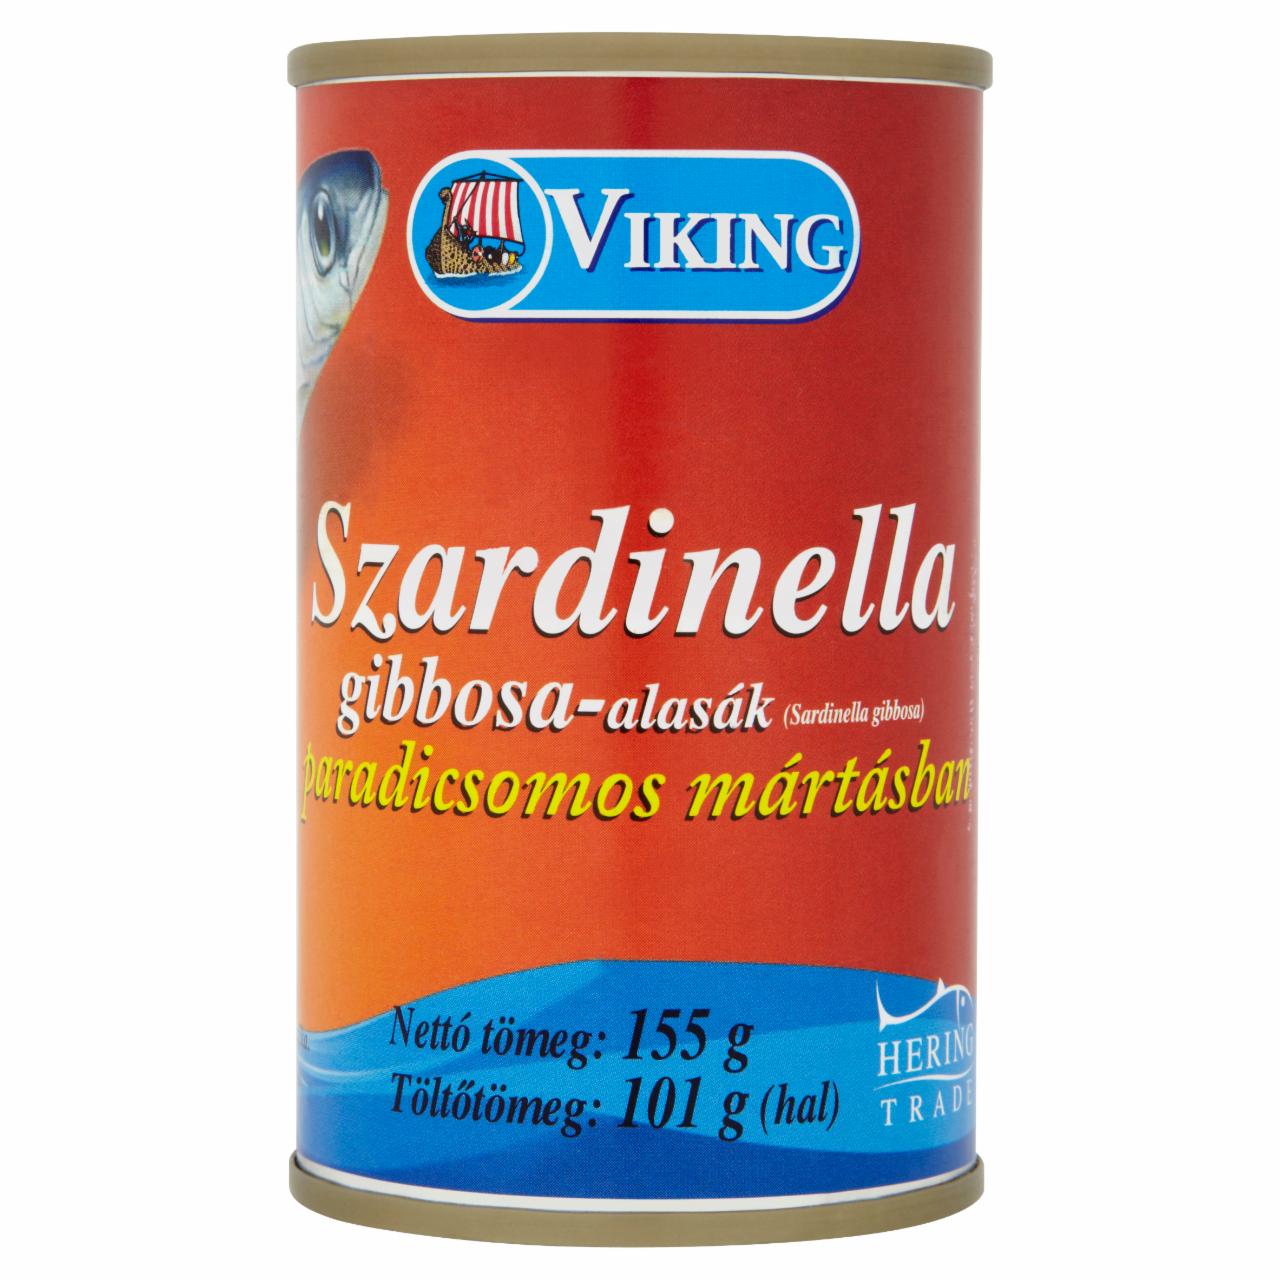 Képek - Viking szardinella paradicsomos mártásban 155 g